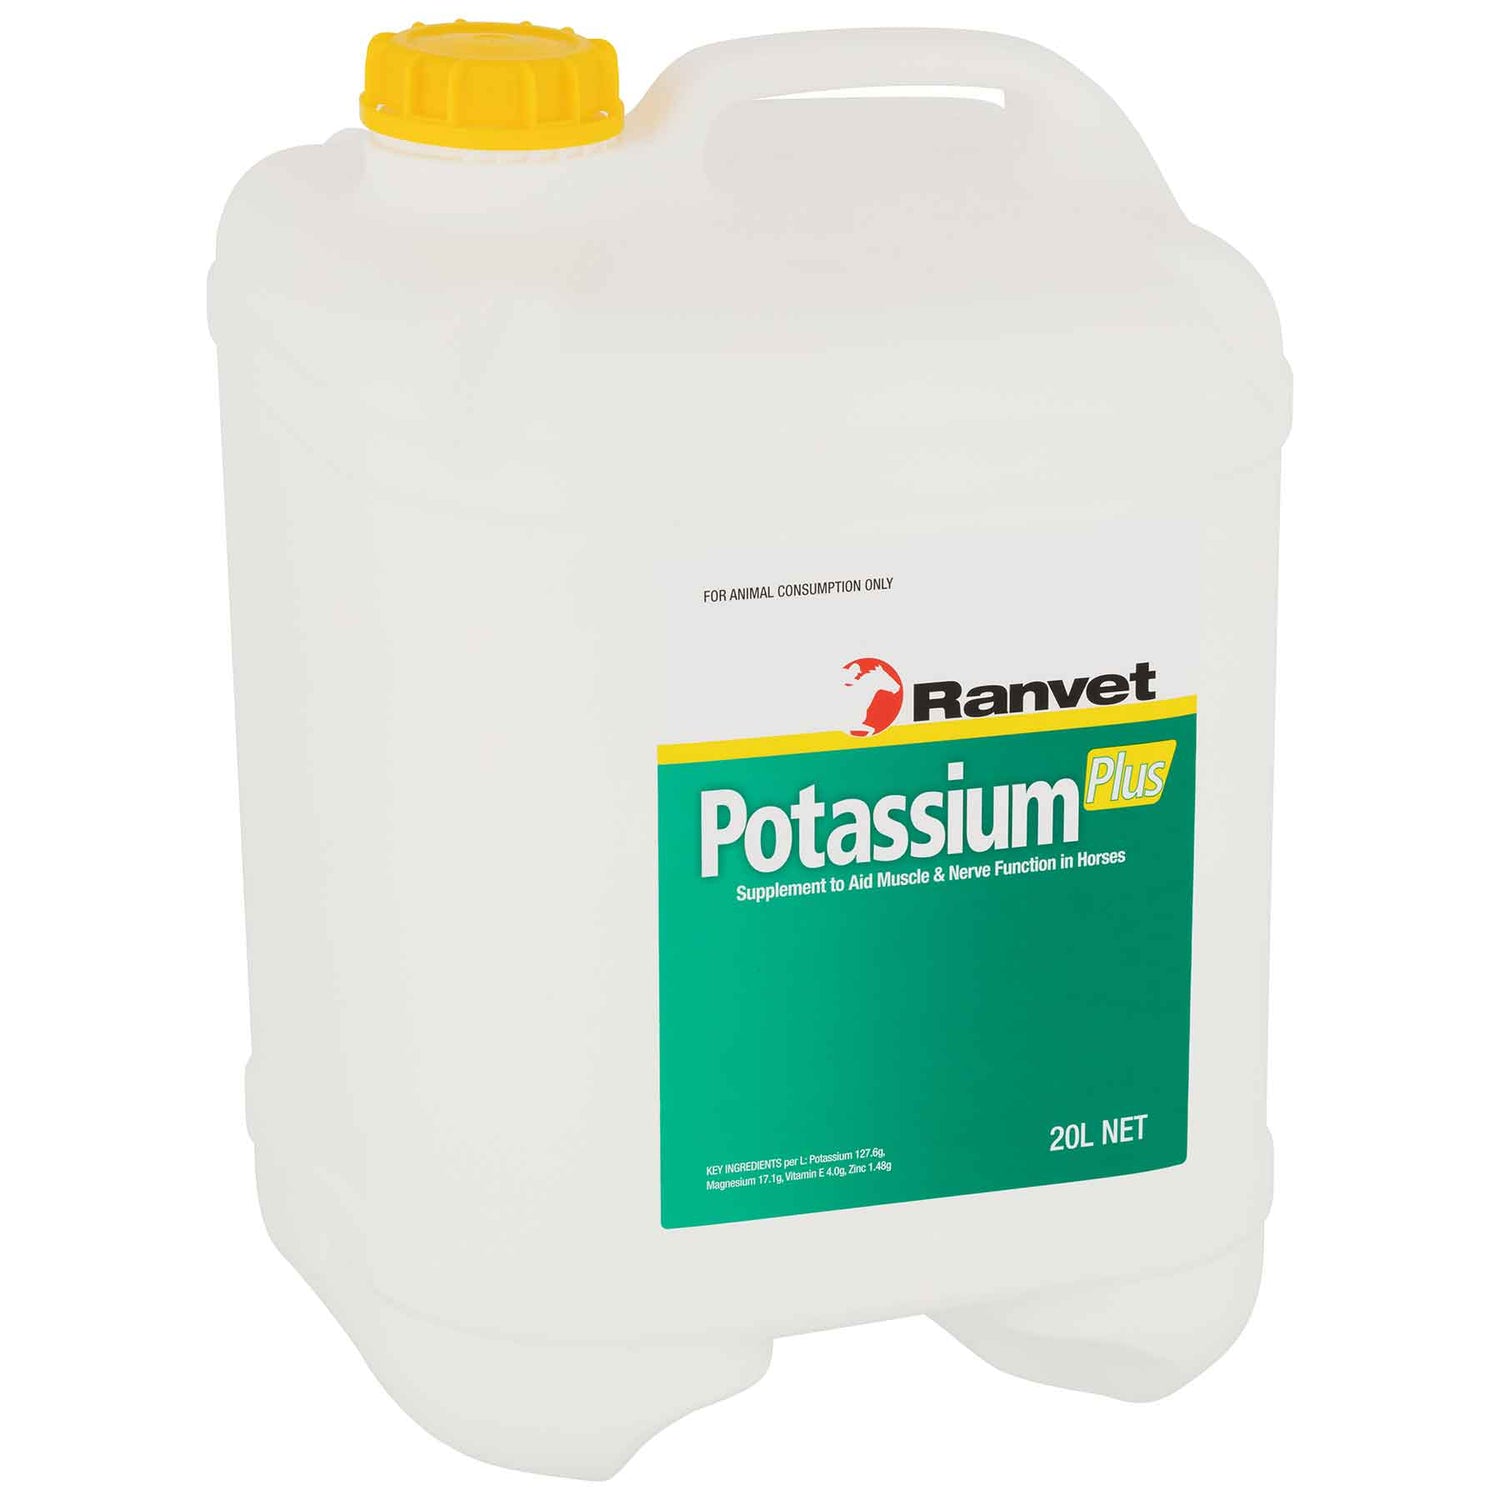 Potassium Plus 20L (Ranvet)